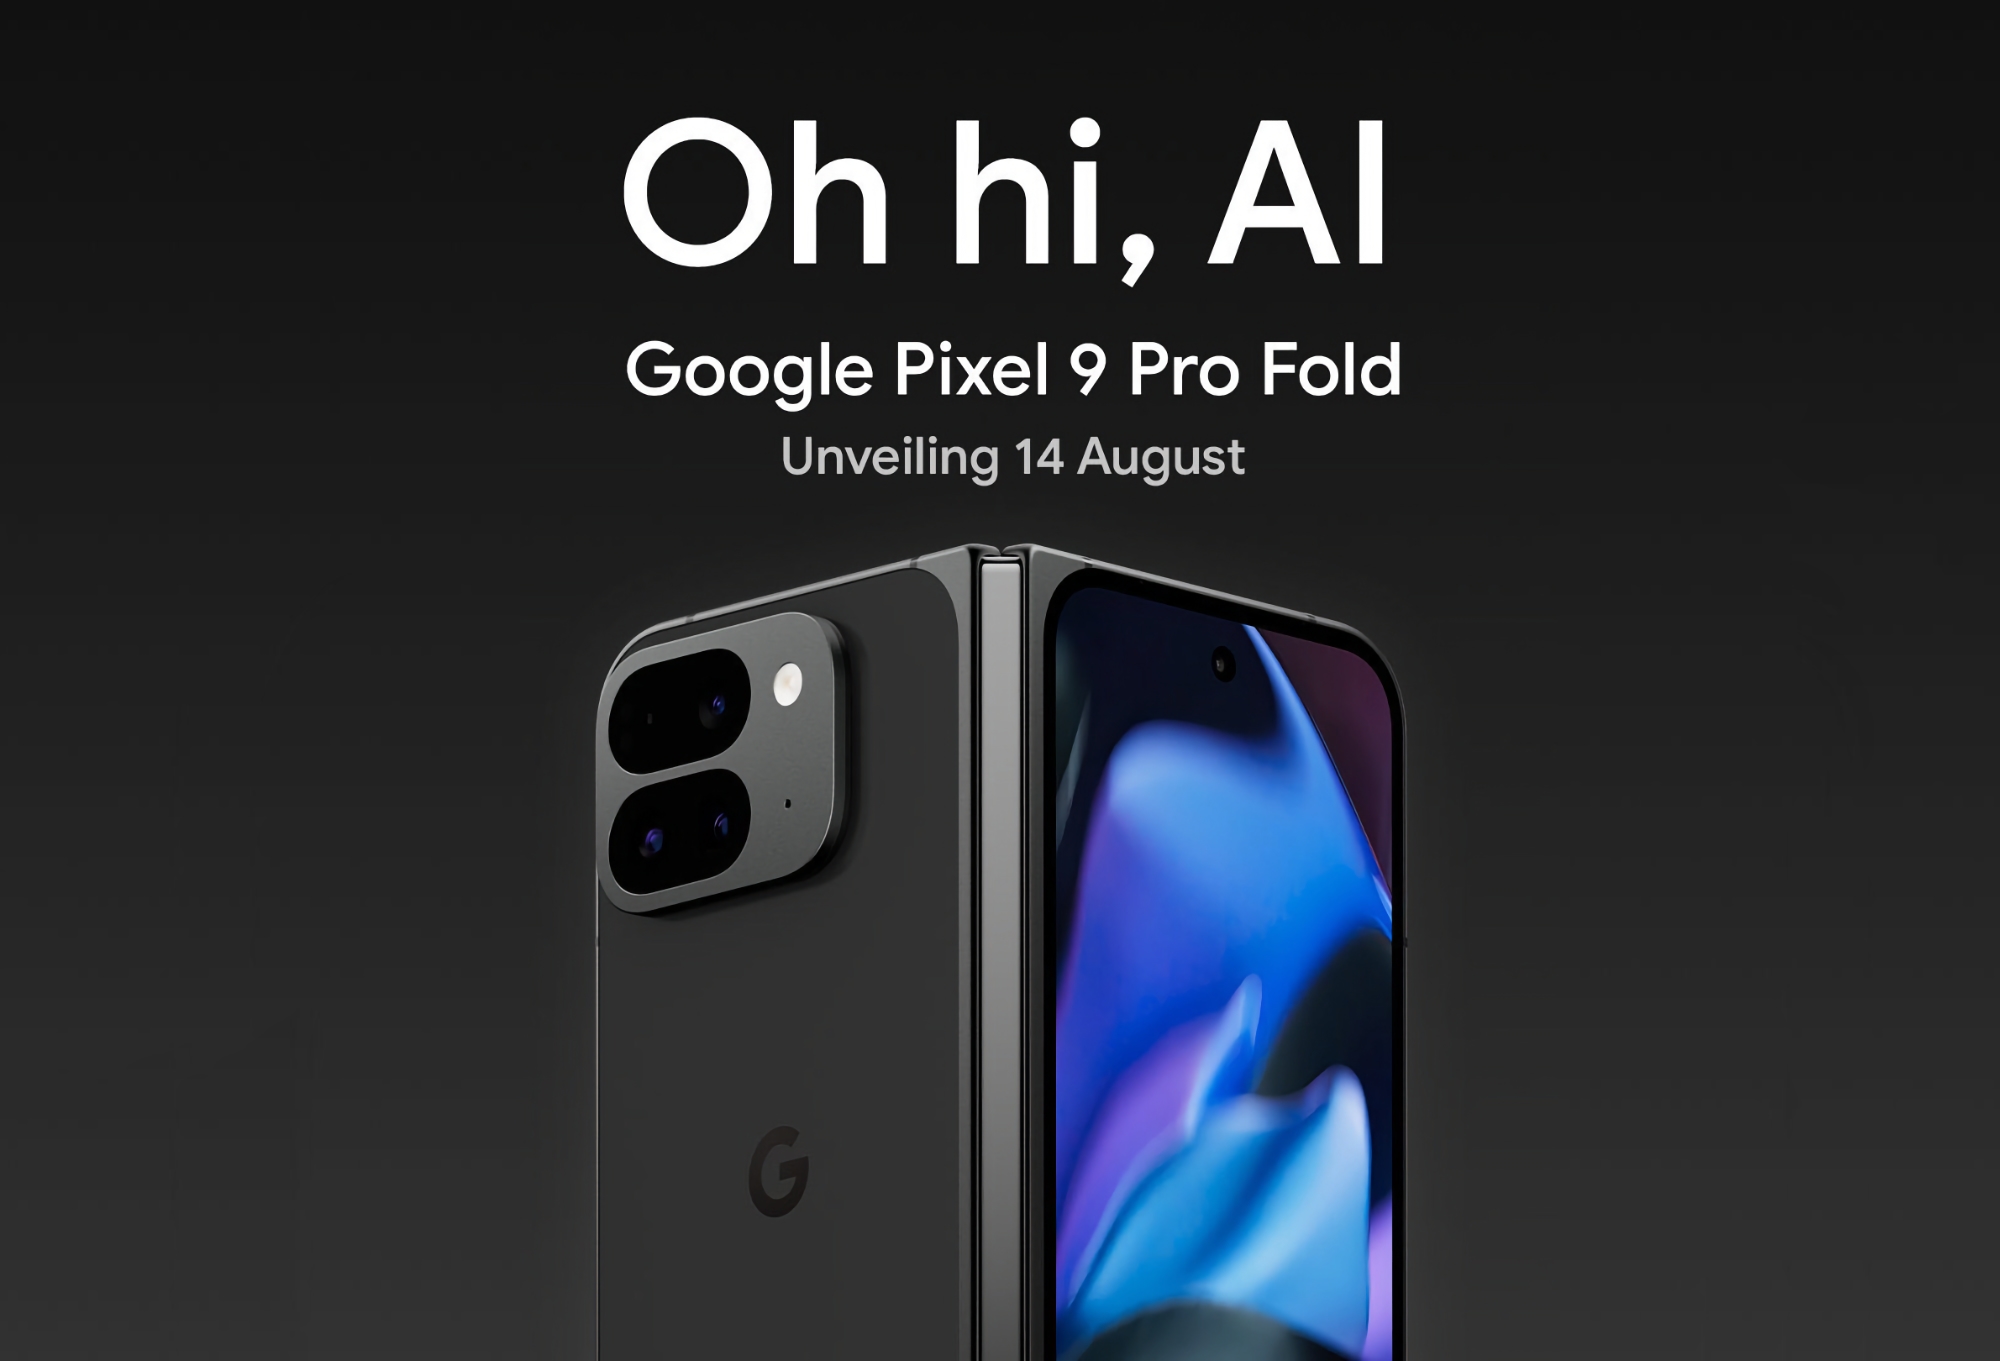 Google hat bestätigt, dass es das faltbare Smartphone Pixel 9 Pro Fold bei einer Präsentation am 14. August vorstellen wird